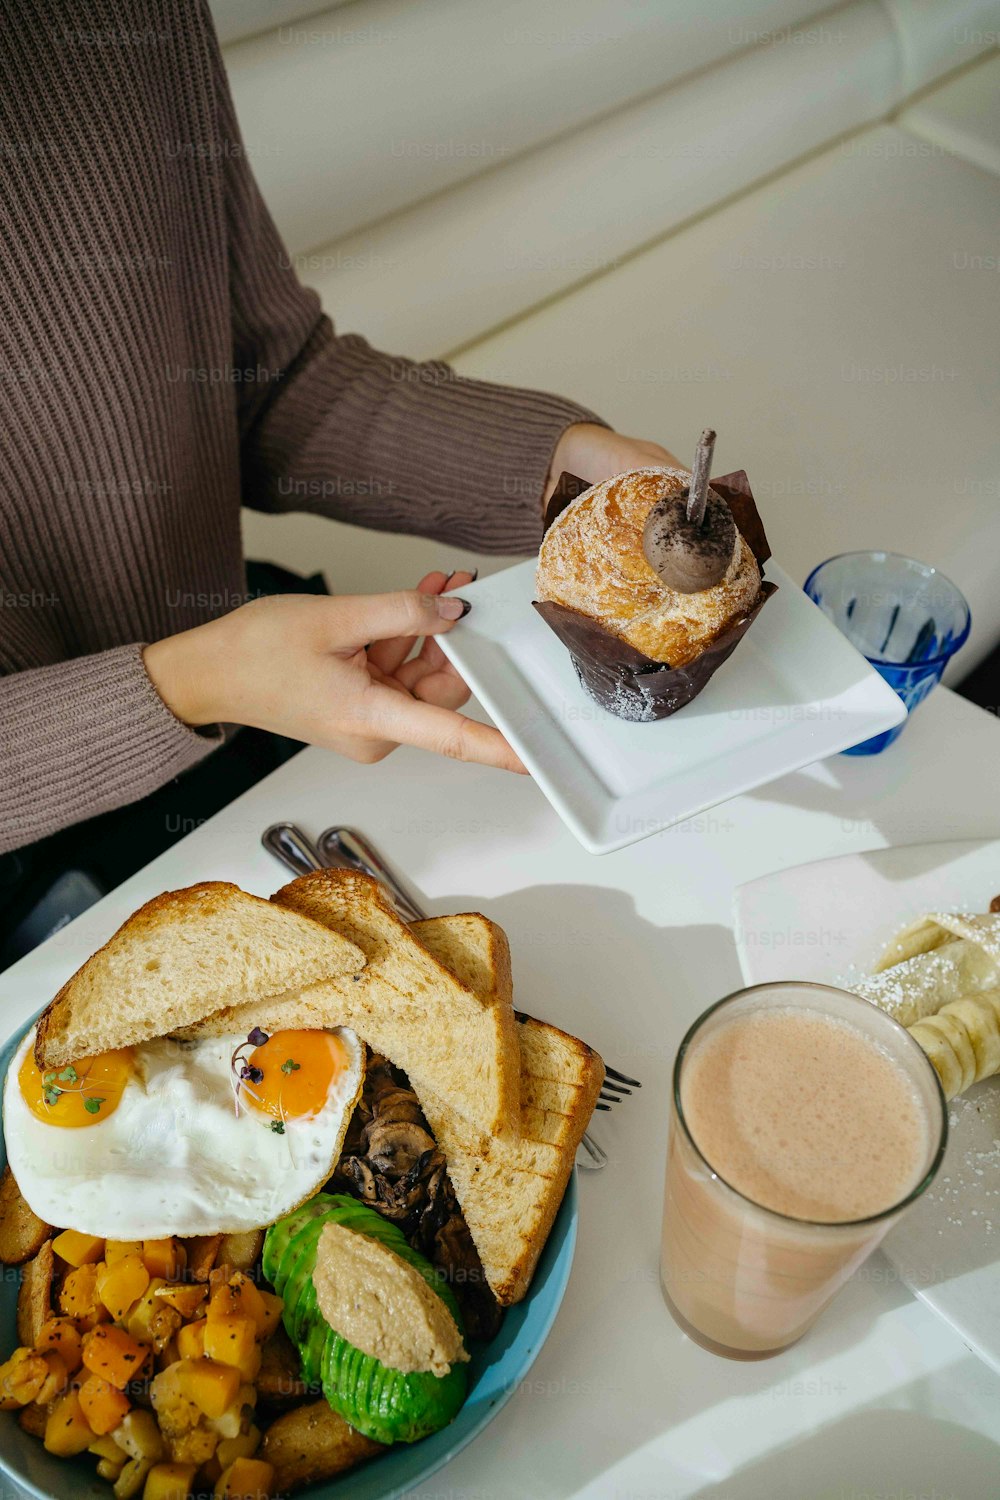 Una persona sosteniendo un plato con un sándwich y una taza de café